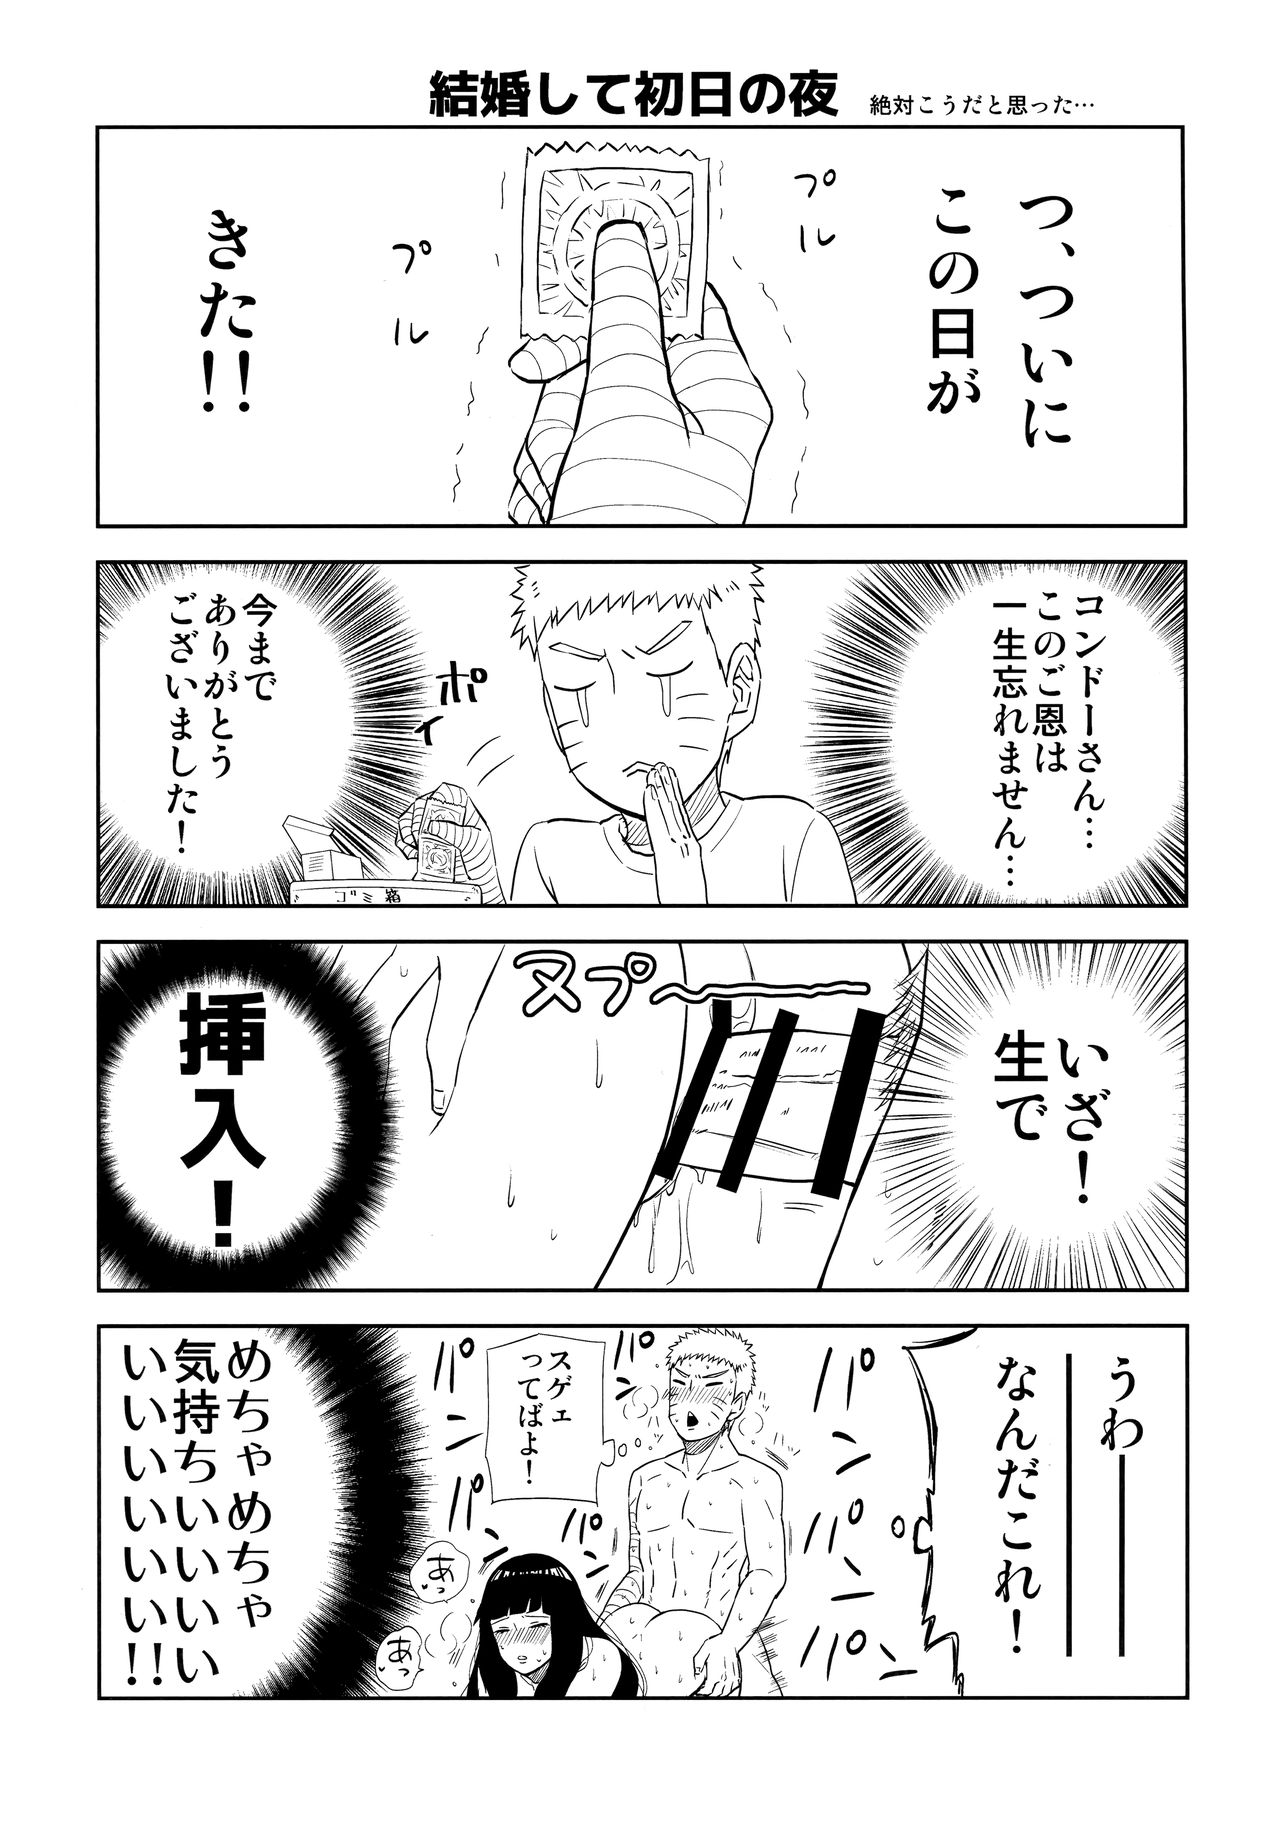 (Zennin Shuuketsu 7) [Cotton 100% (Shikamake)] Sasowarete... (Naruto) (全忍集結7) [綿100% (バンビ。)] 誘われて… (NARUTO -ナルト-)